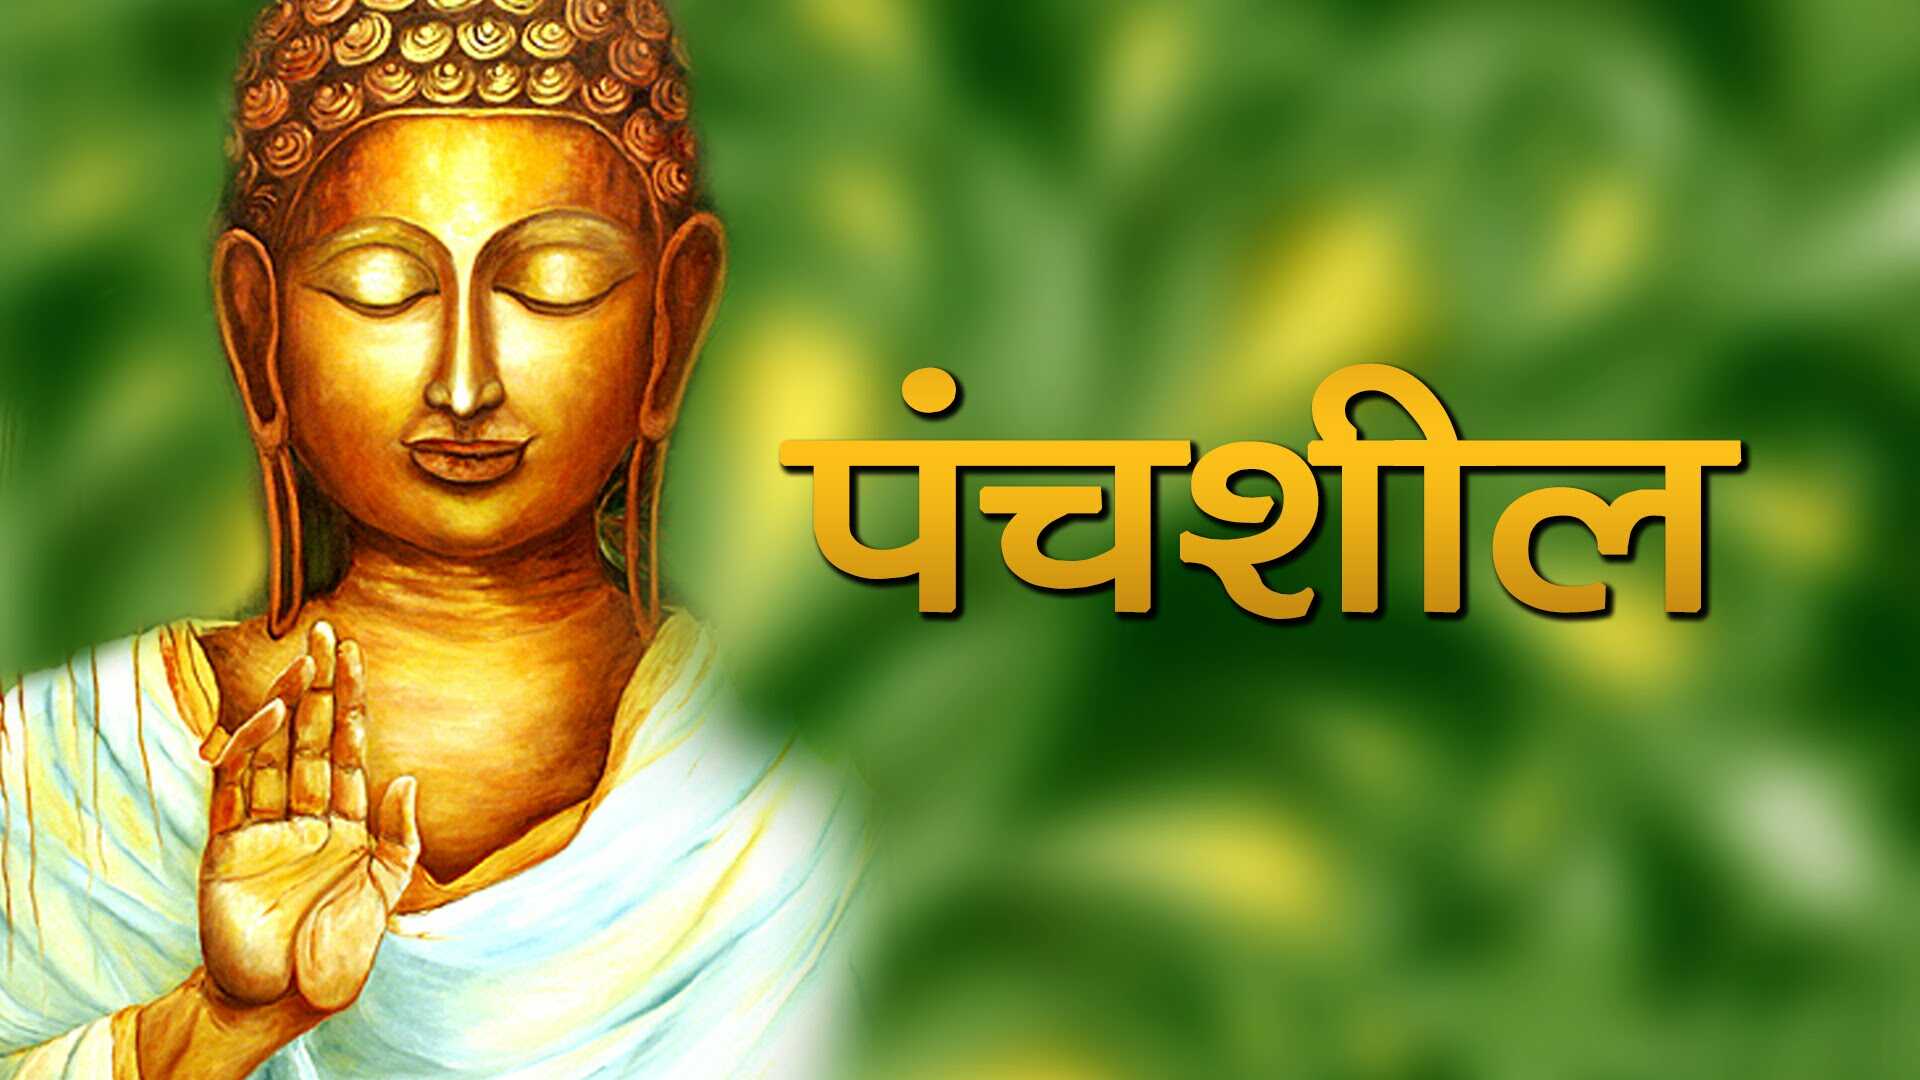 Buddha 3D Wallpaper Widescreen. Hindu Gods and Goddesses